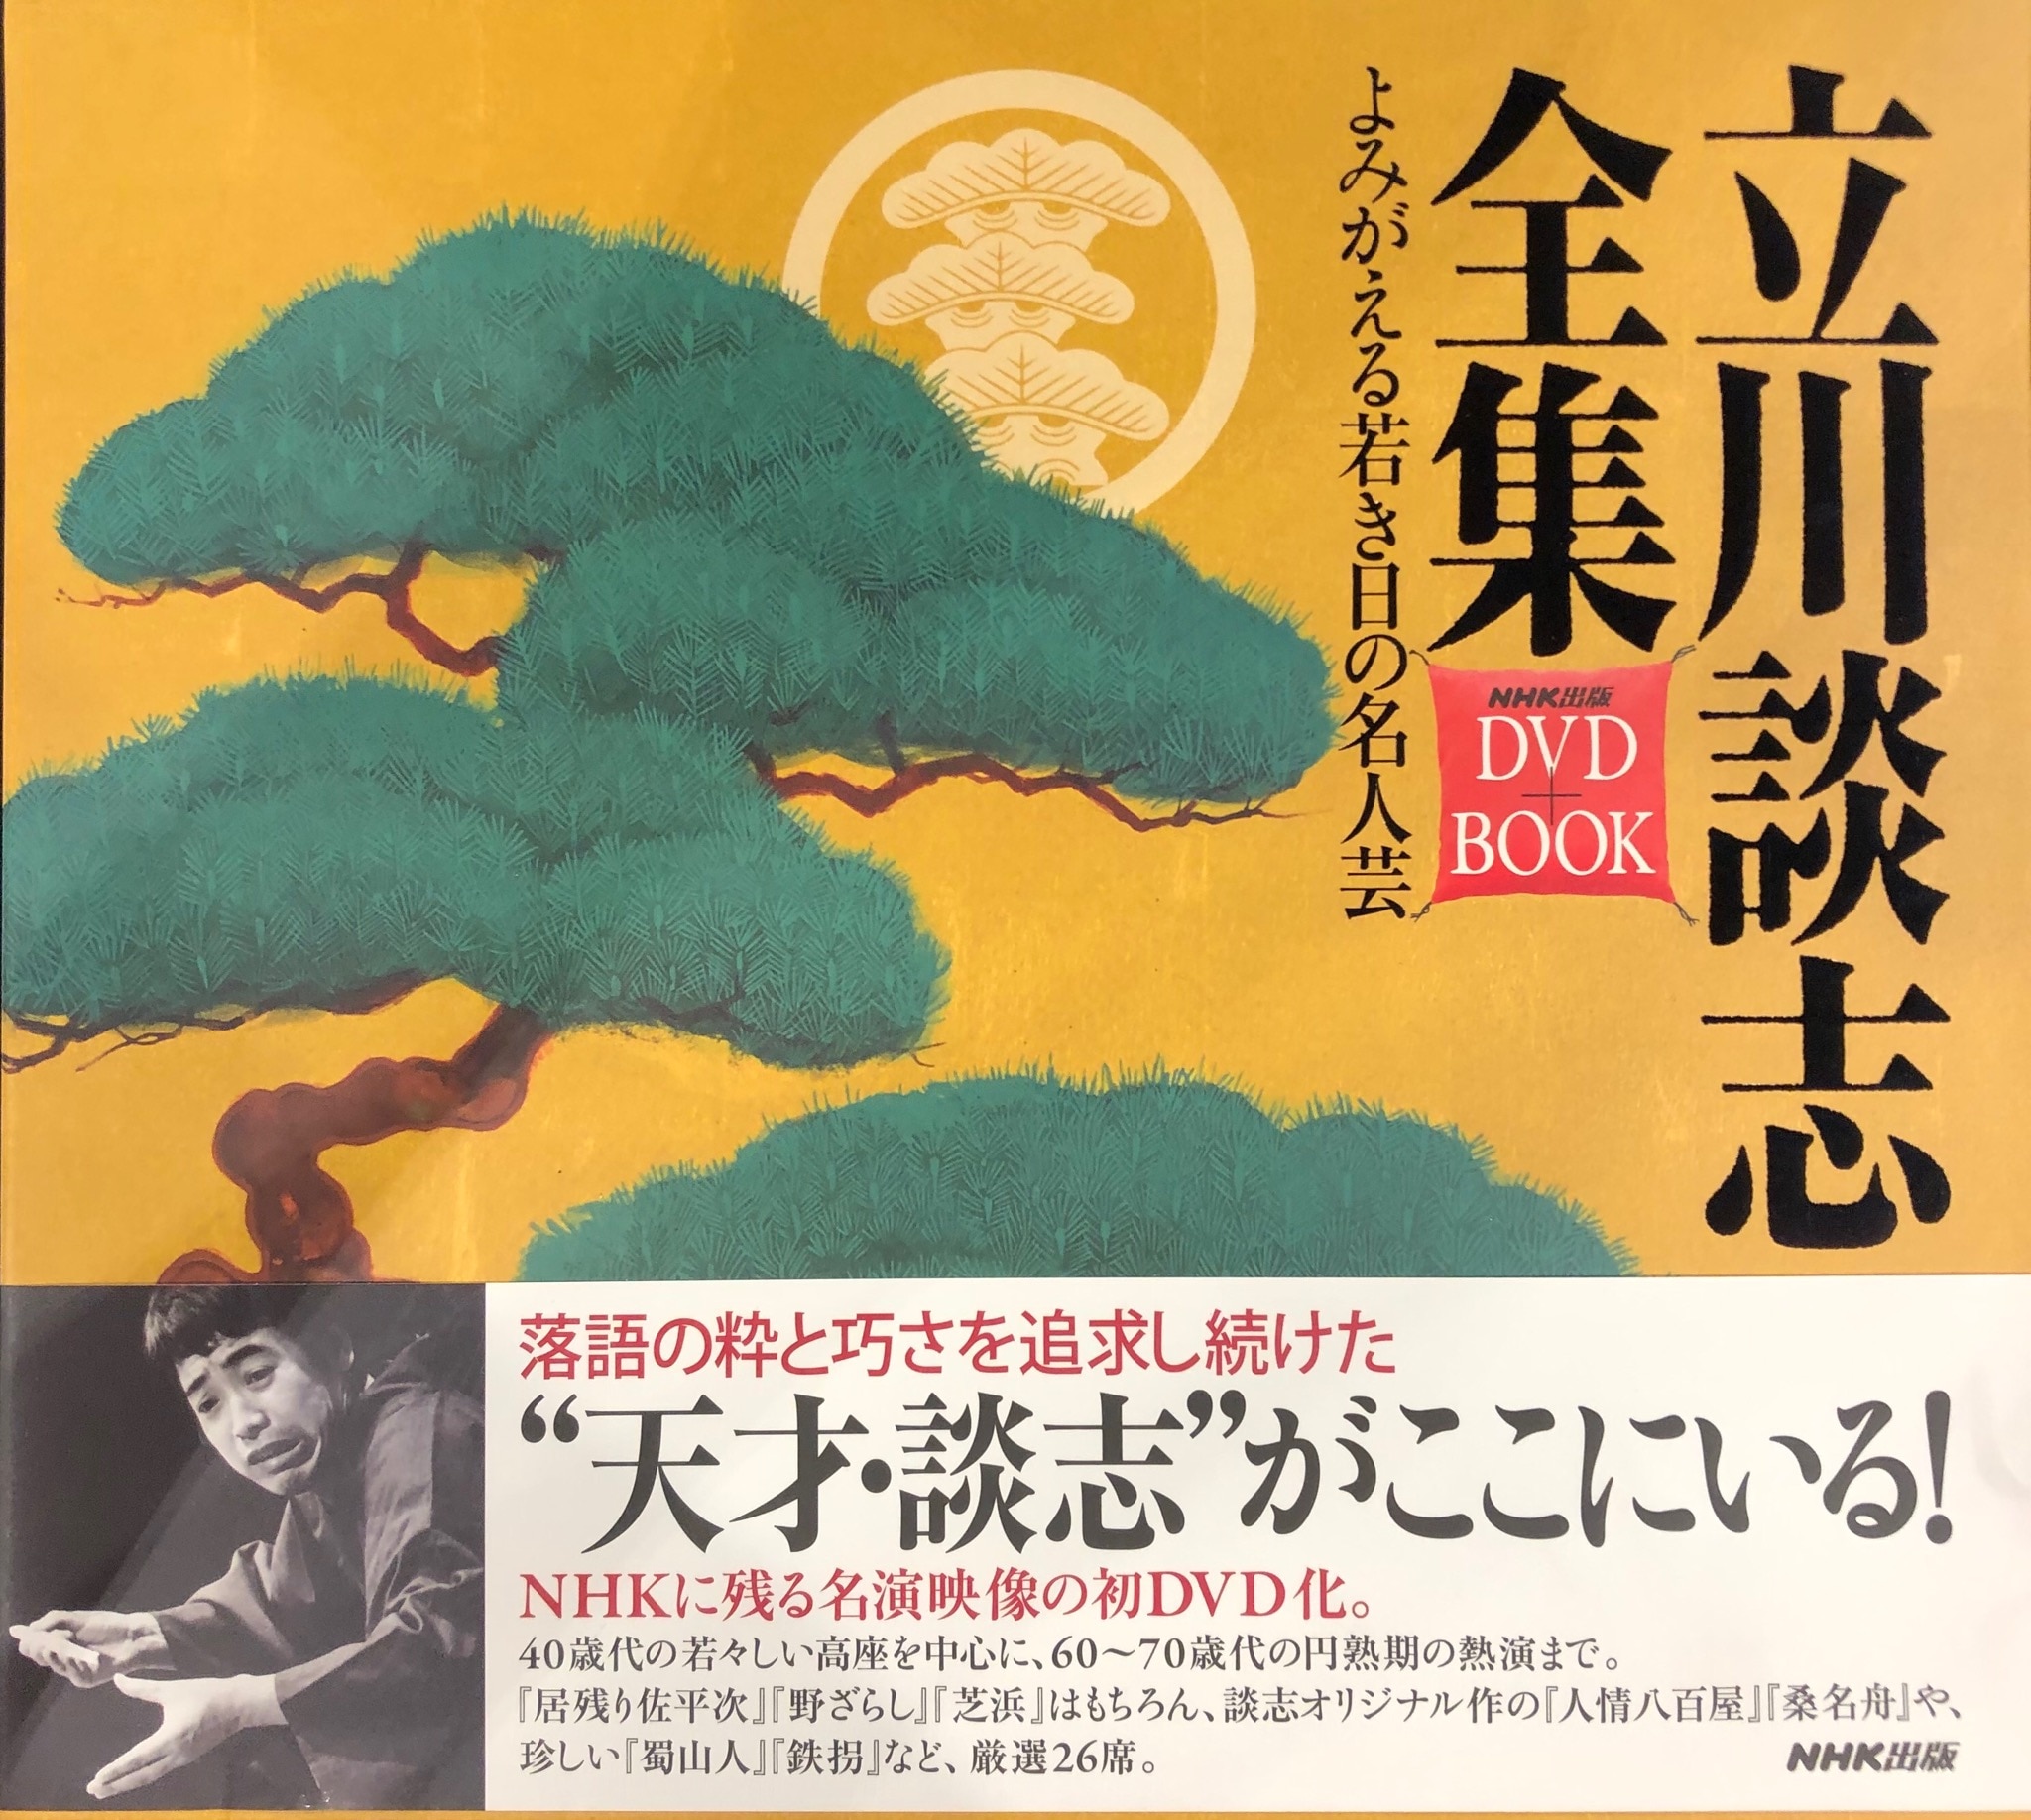 NHK出版 立川談志全集 DVD+BOOK よみがえる若き日の名人芸